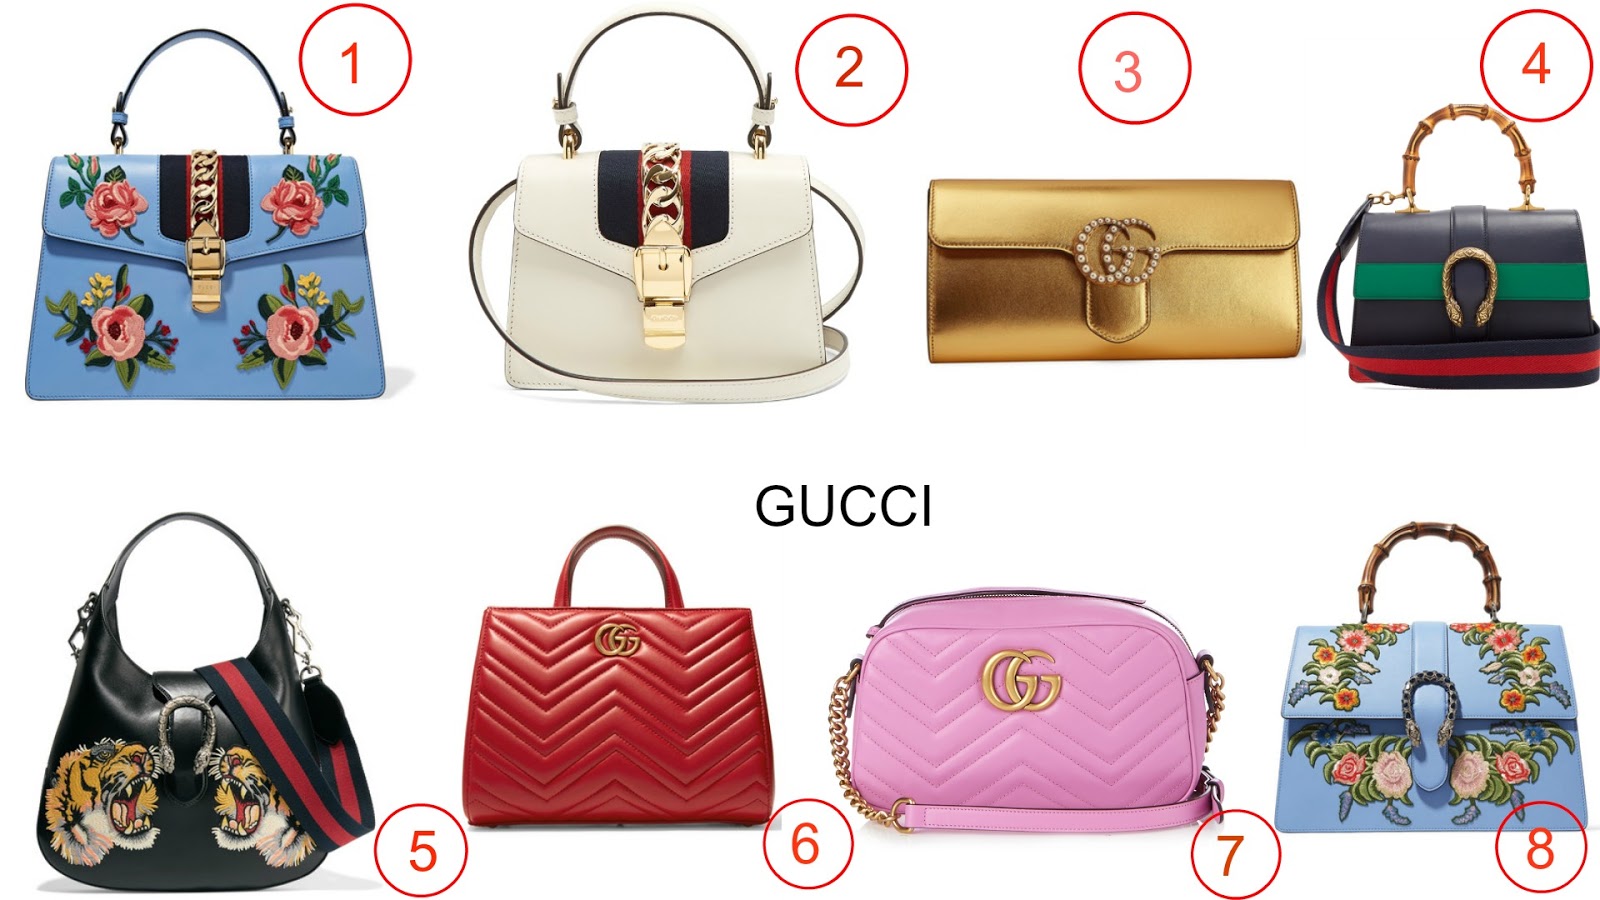 The New Gucci Top Handbags 2017 - FashionR